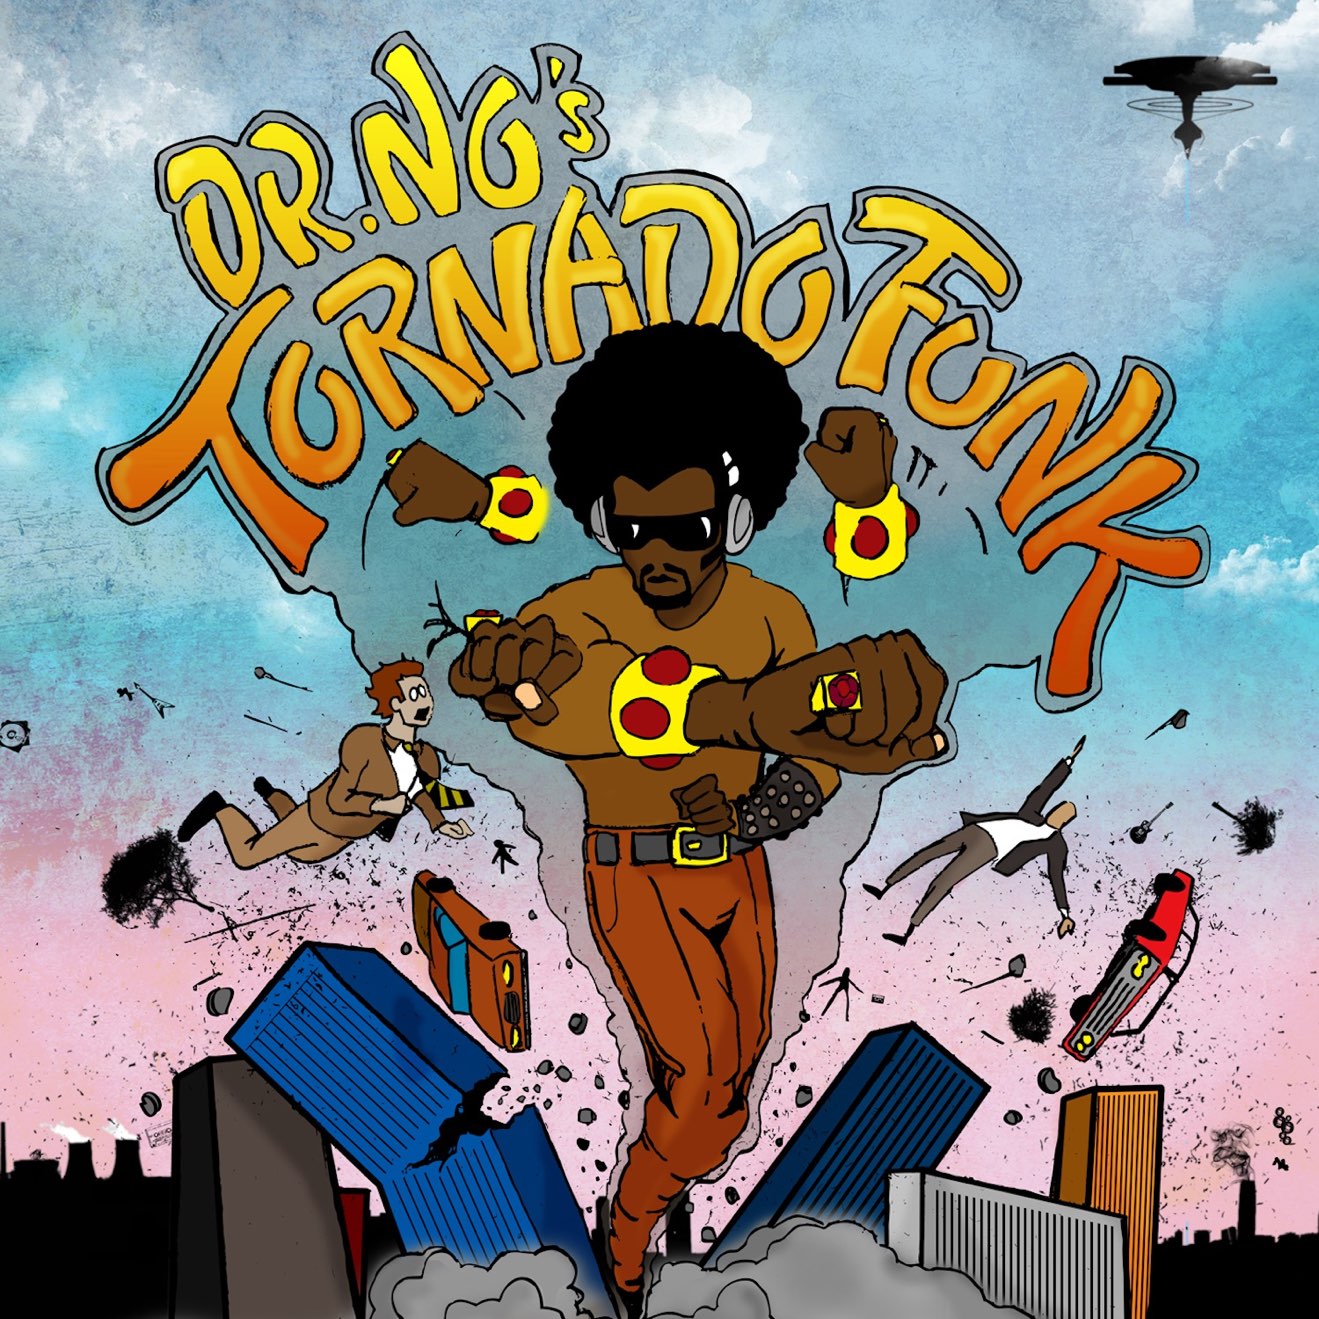 Oh No – Dr. No’s Kali Tornado Funk (2012) [iTunes Match M4A]